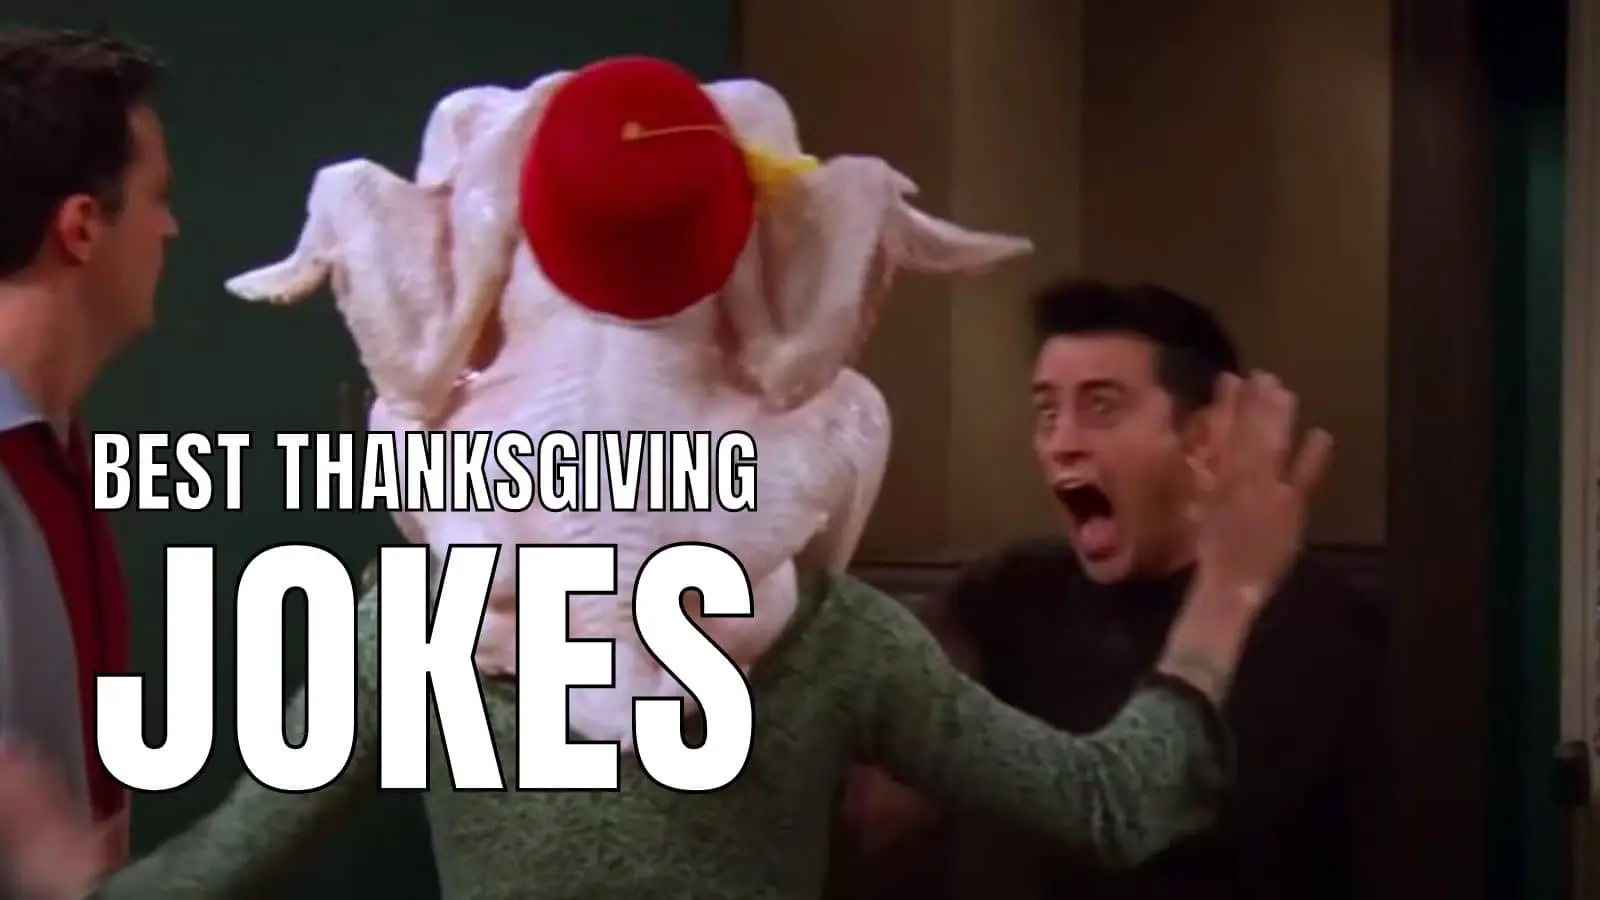 Best Thanksgiving Jokes on Turkey